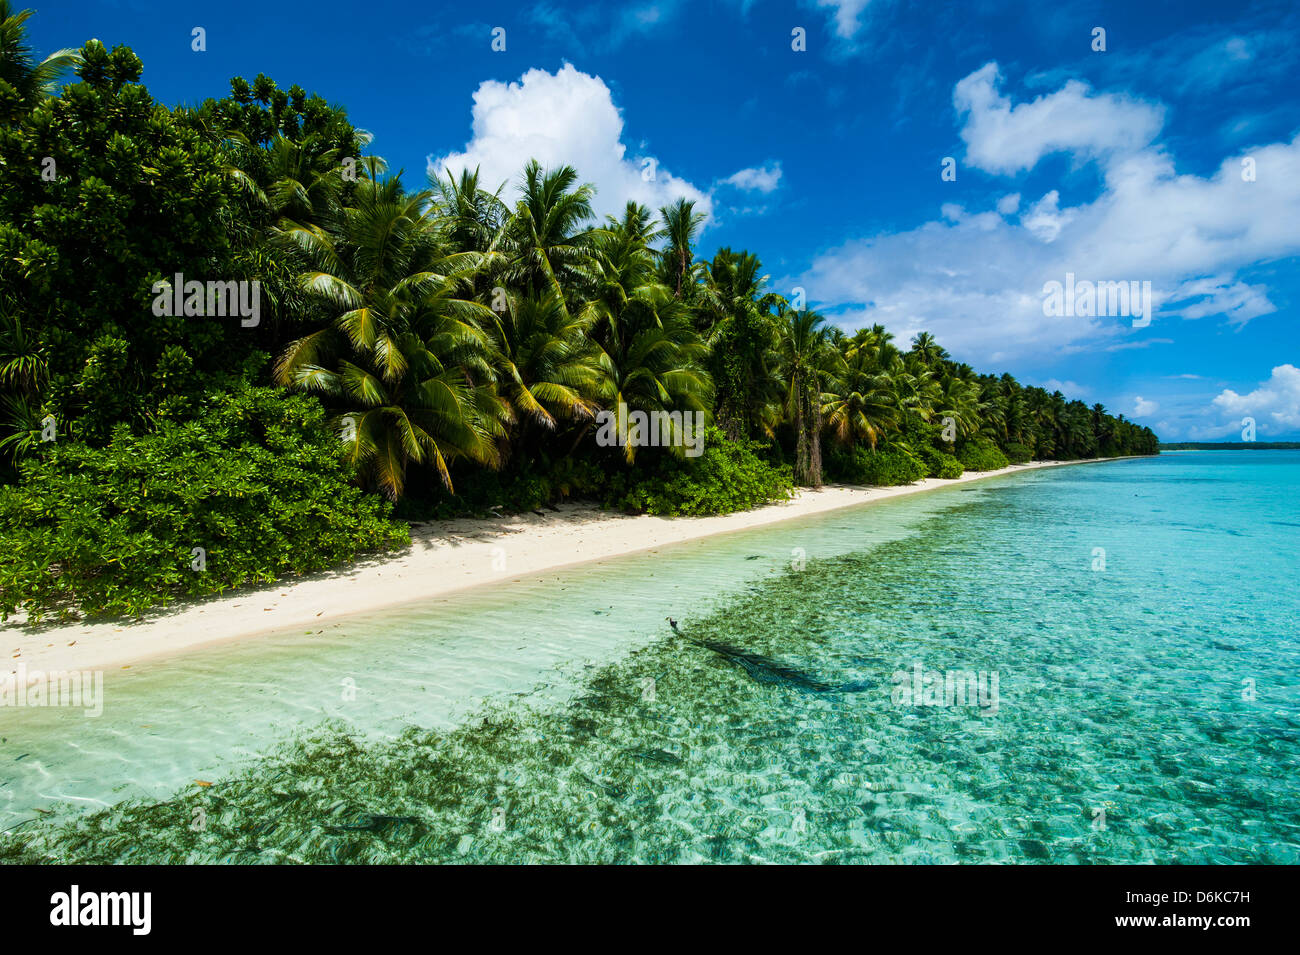 Paradies weißer Sandstrand im türkisfarbenen Wasser auf Ant-Atoll, Pohnpei, Mikronesien, Pazifik Stockfoto